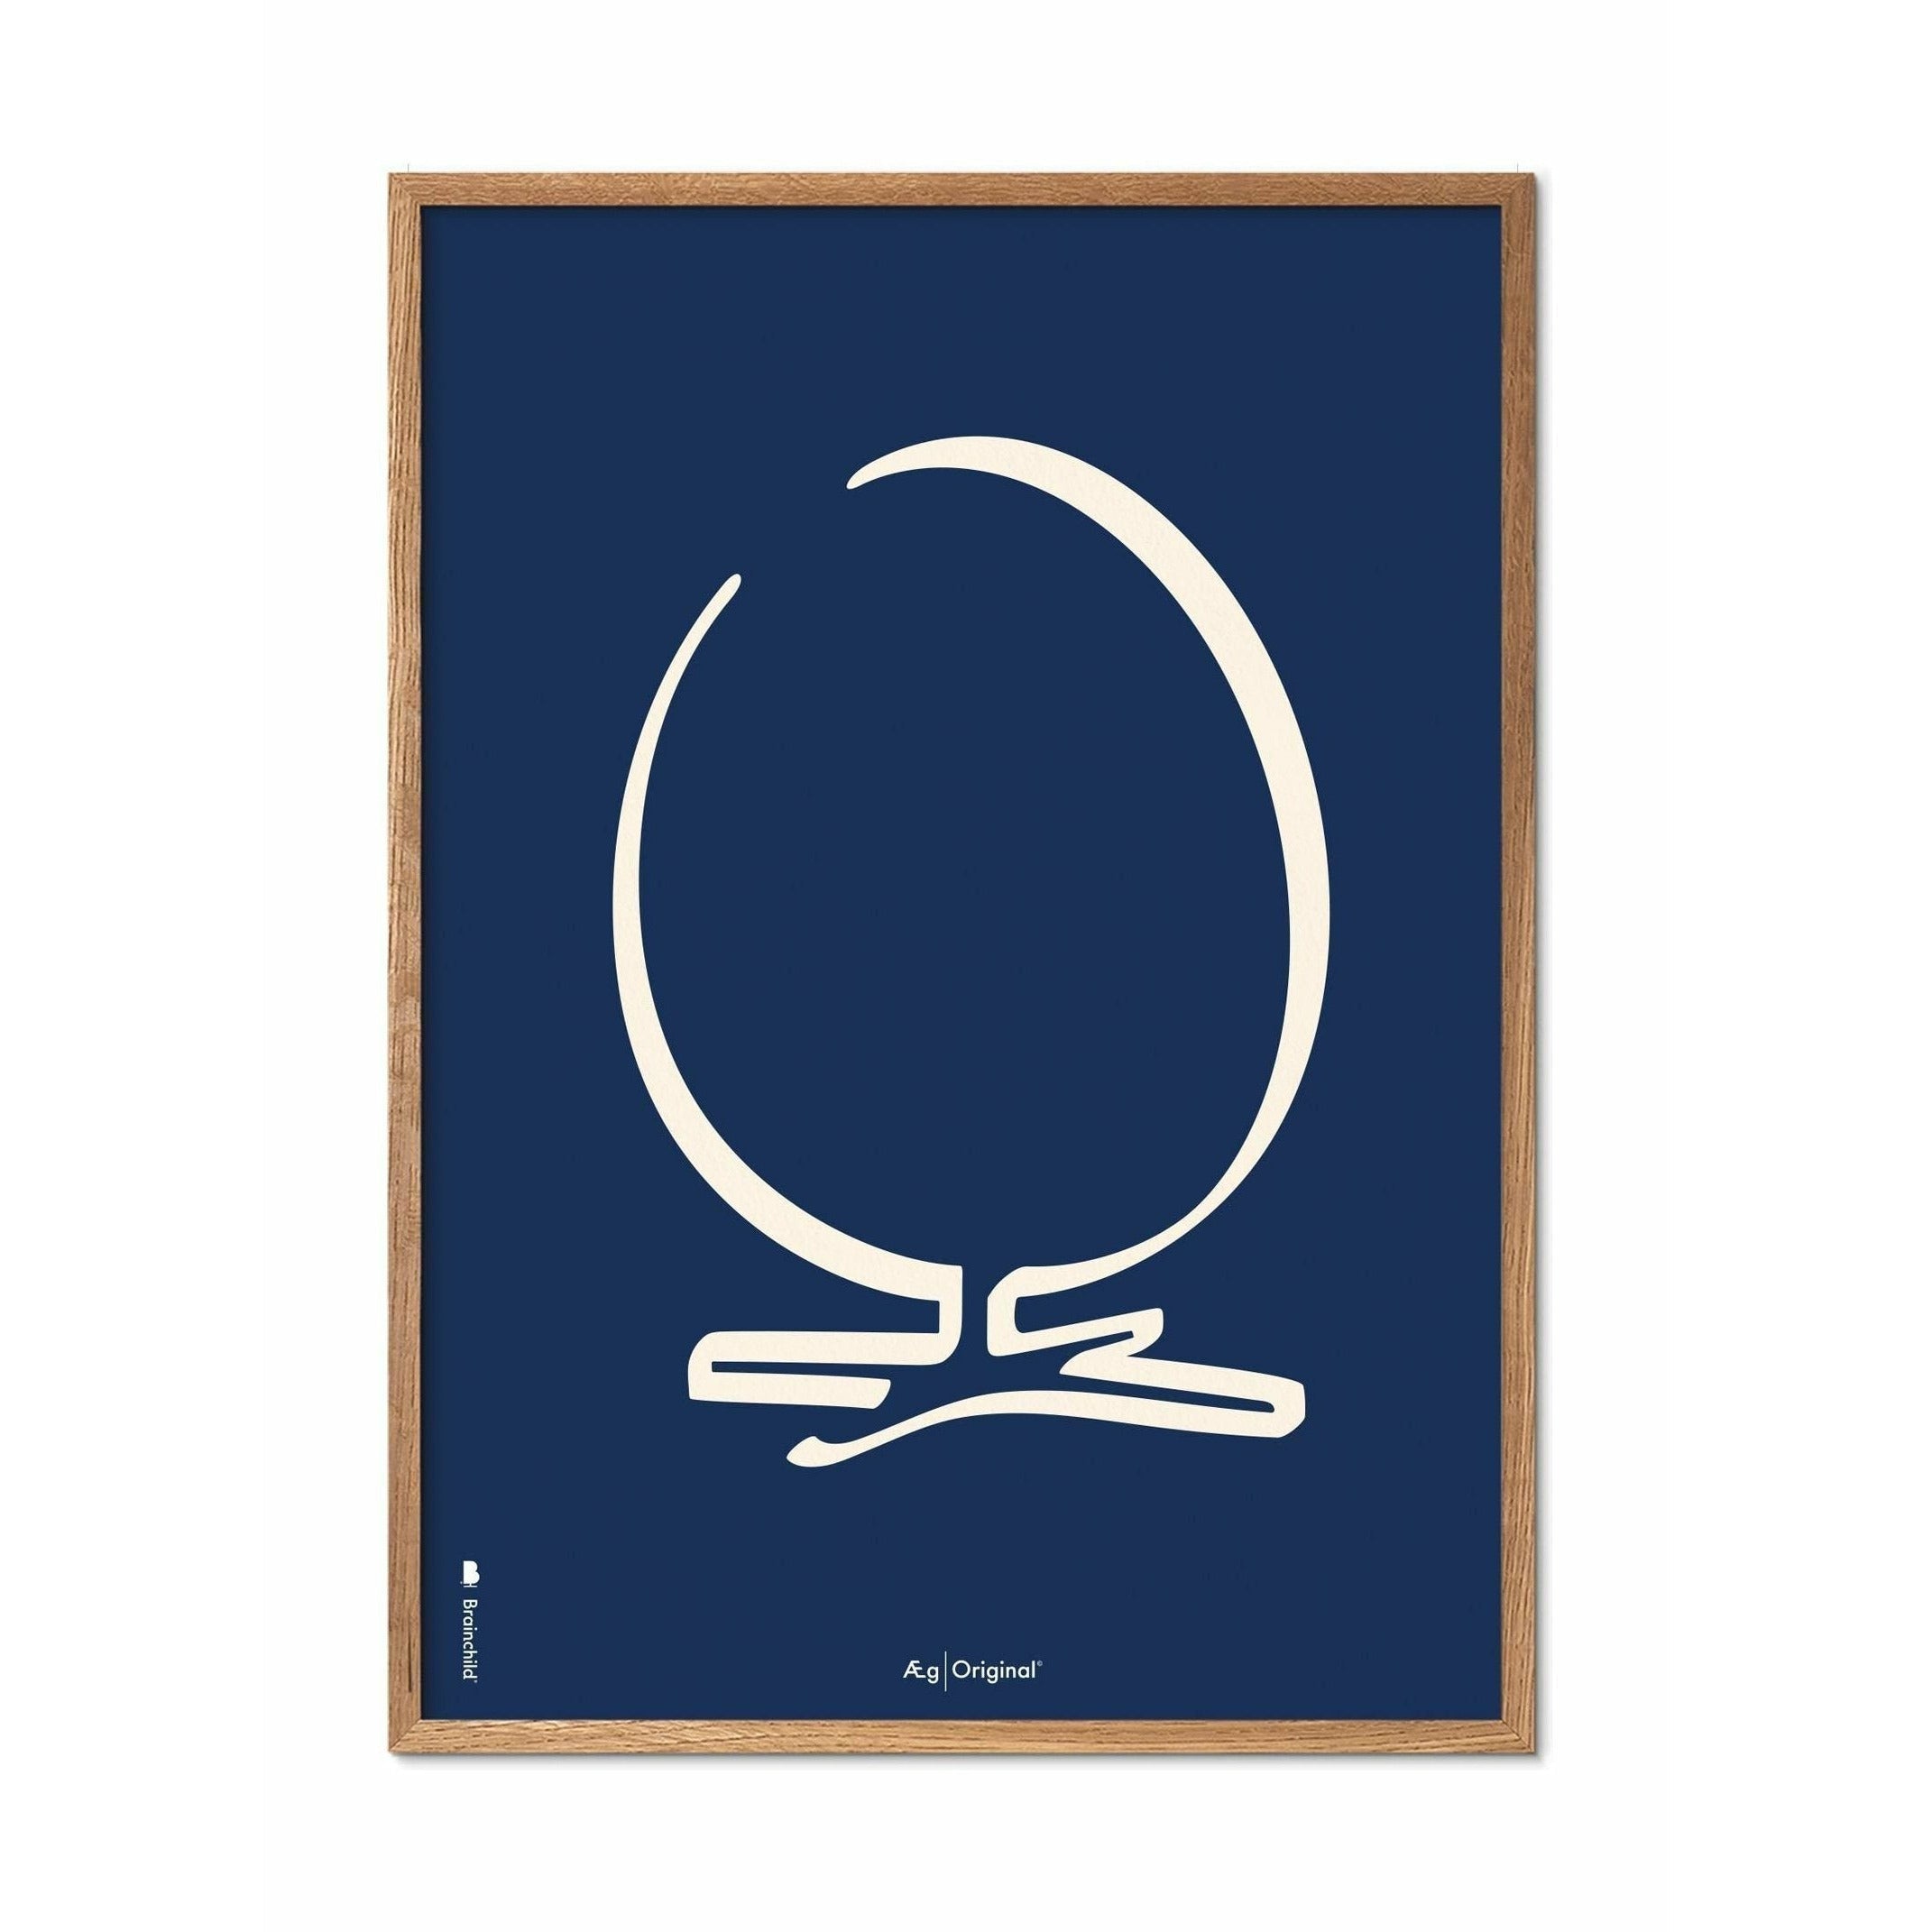 Brainchild Eierlijnposter, frame gemaakt van licht hout 30x40 cm, blauwe achtergrond